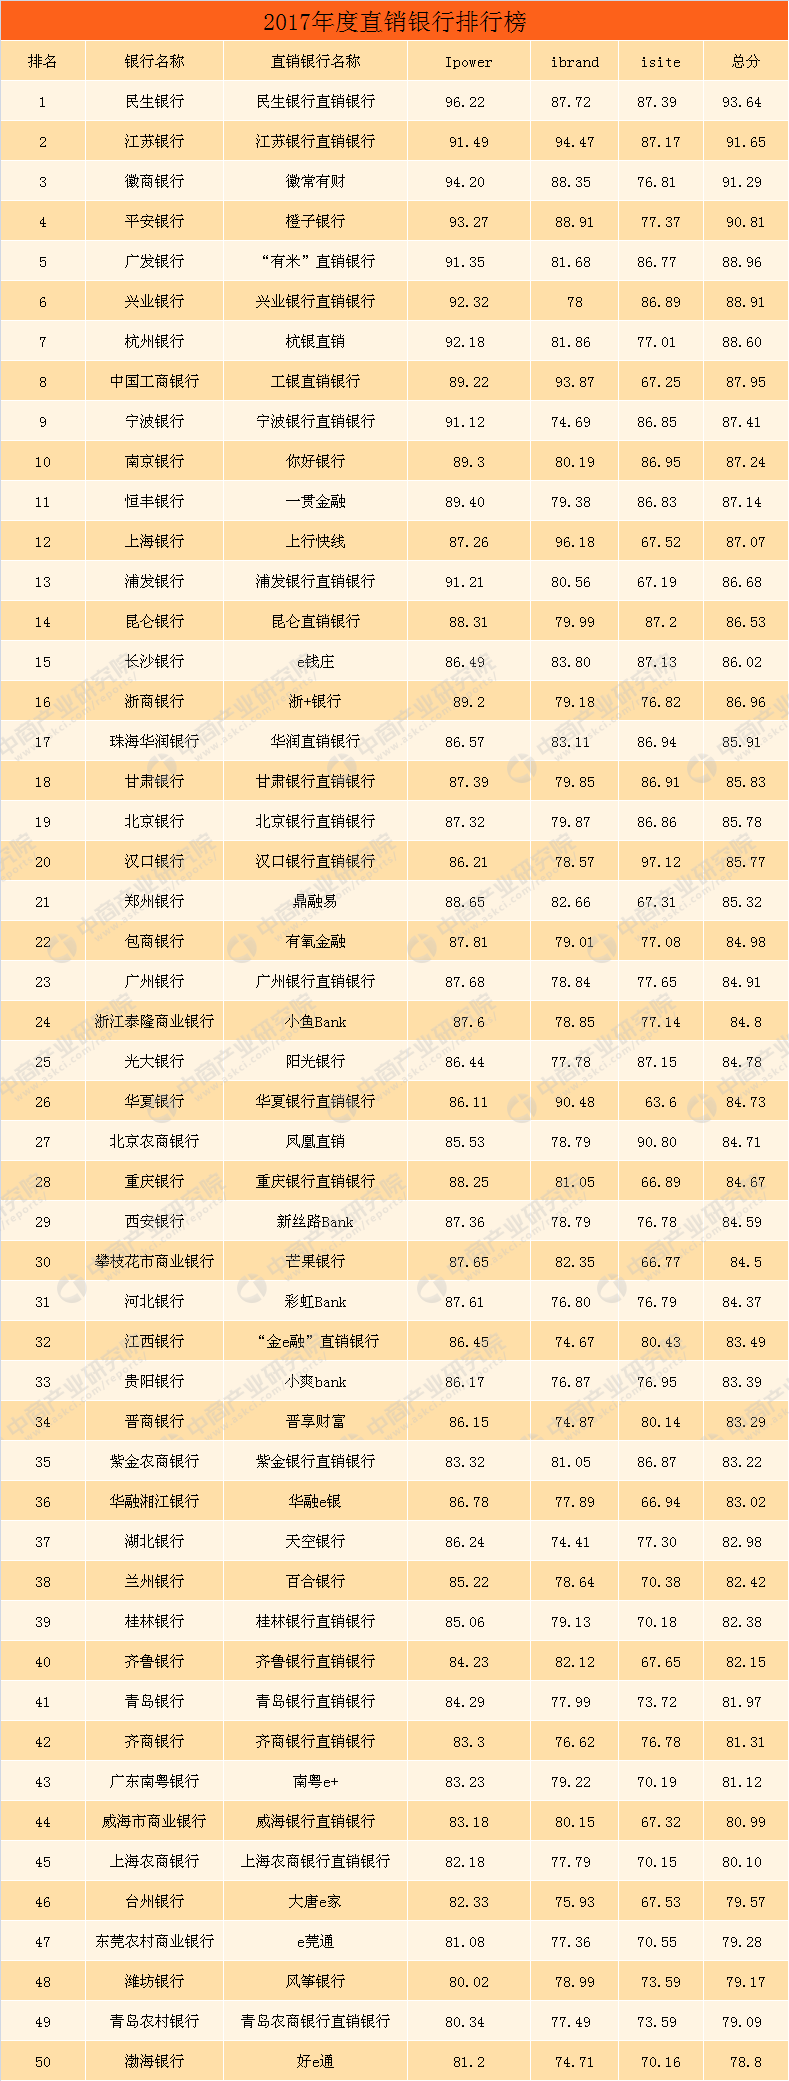 2017年最新直销排行榜_2017年中国直销企业排行榜:总业绩1964.4亿拉开四个梯队